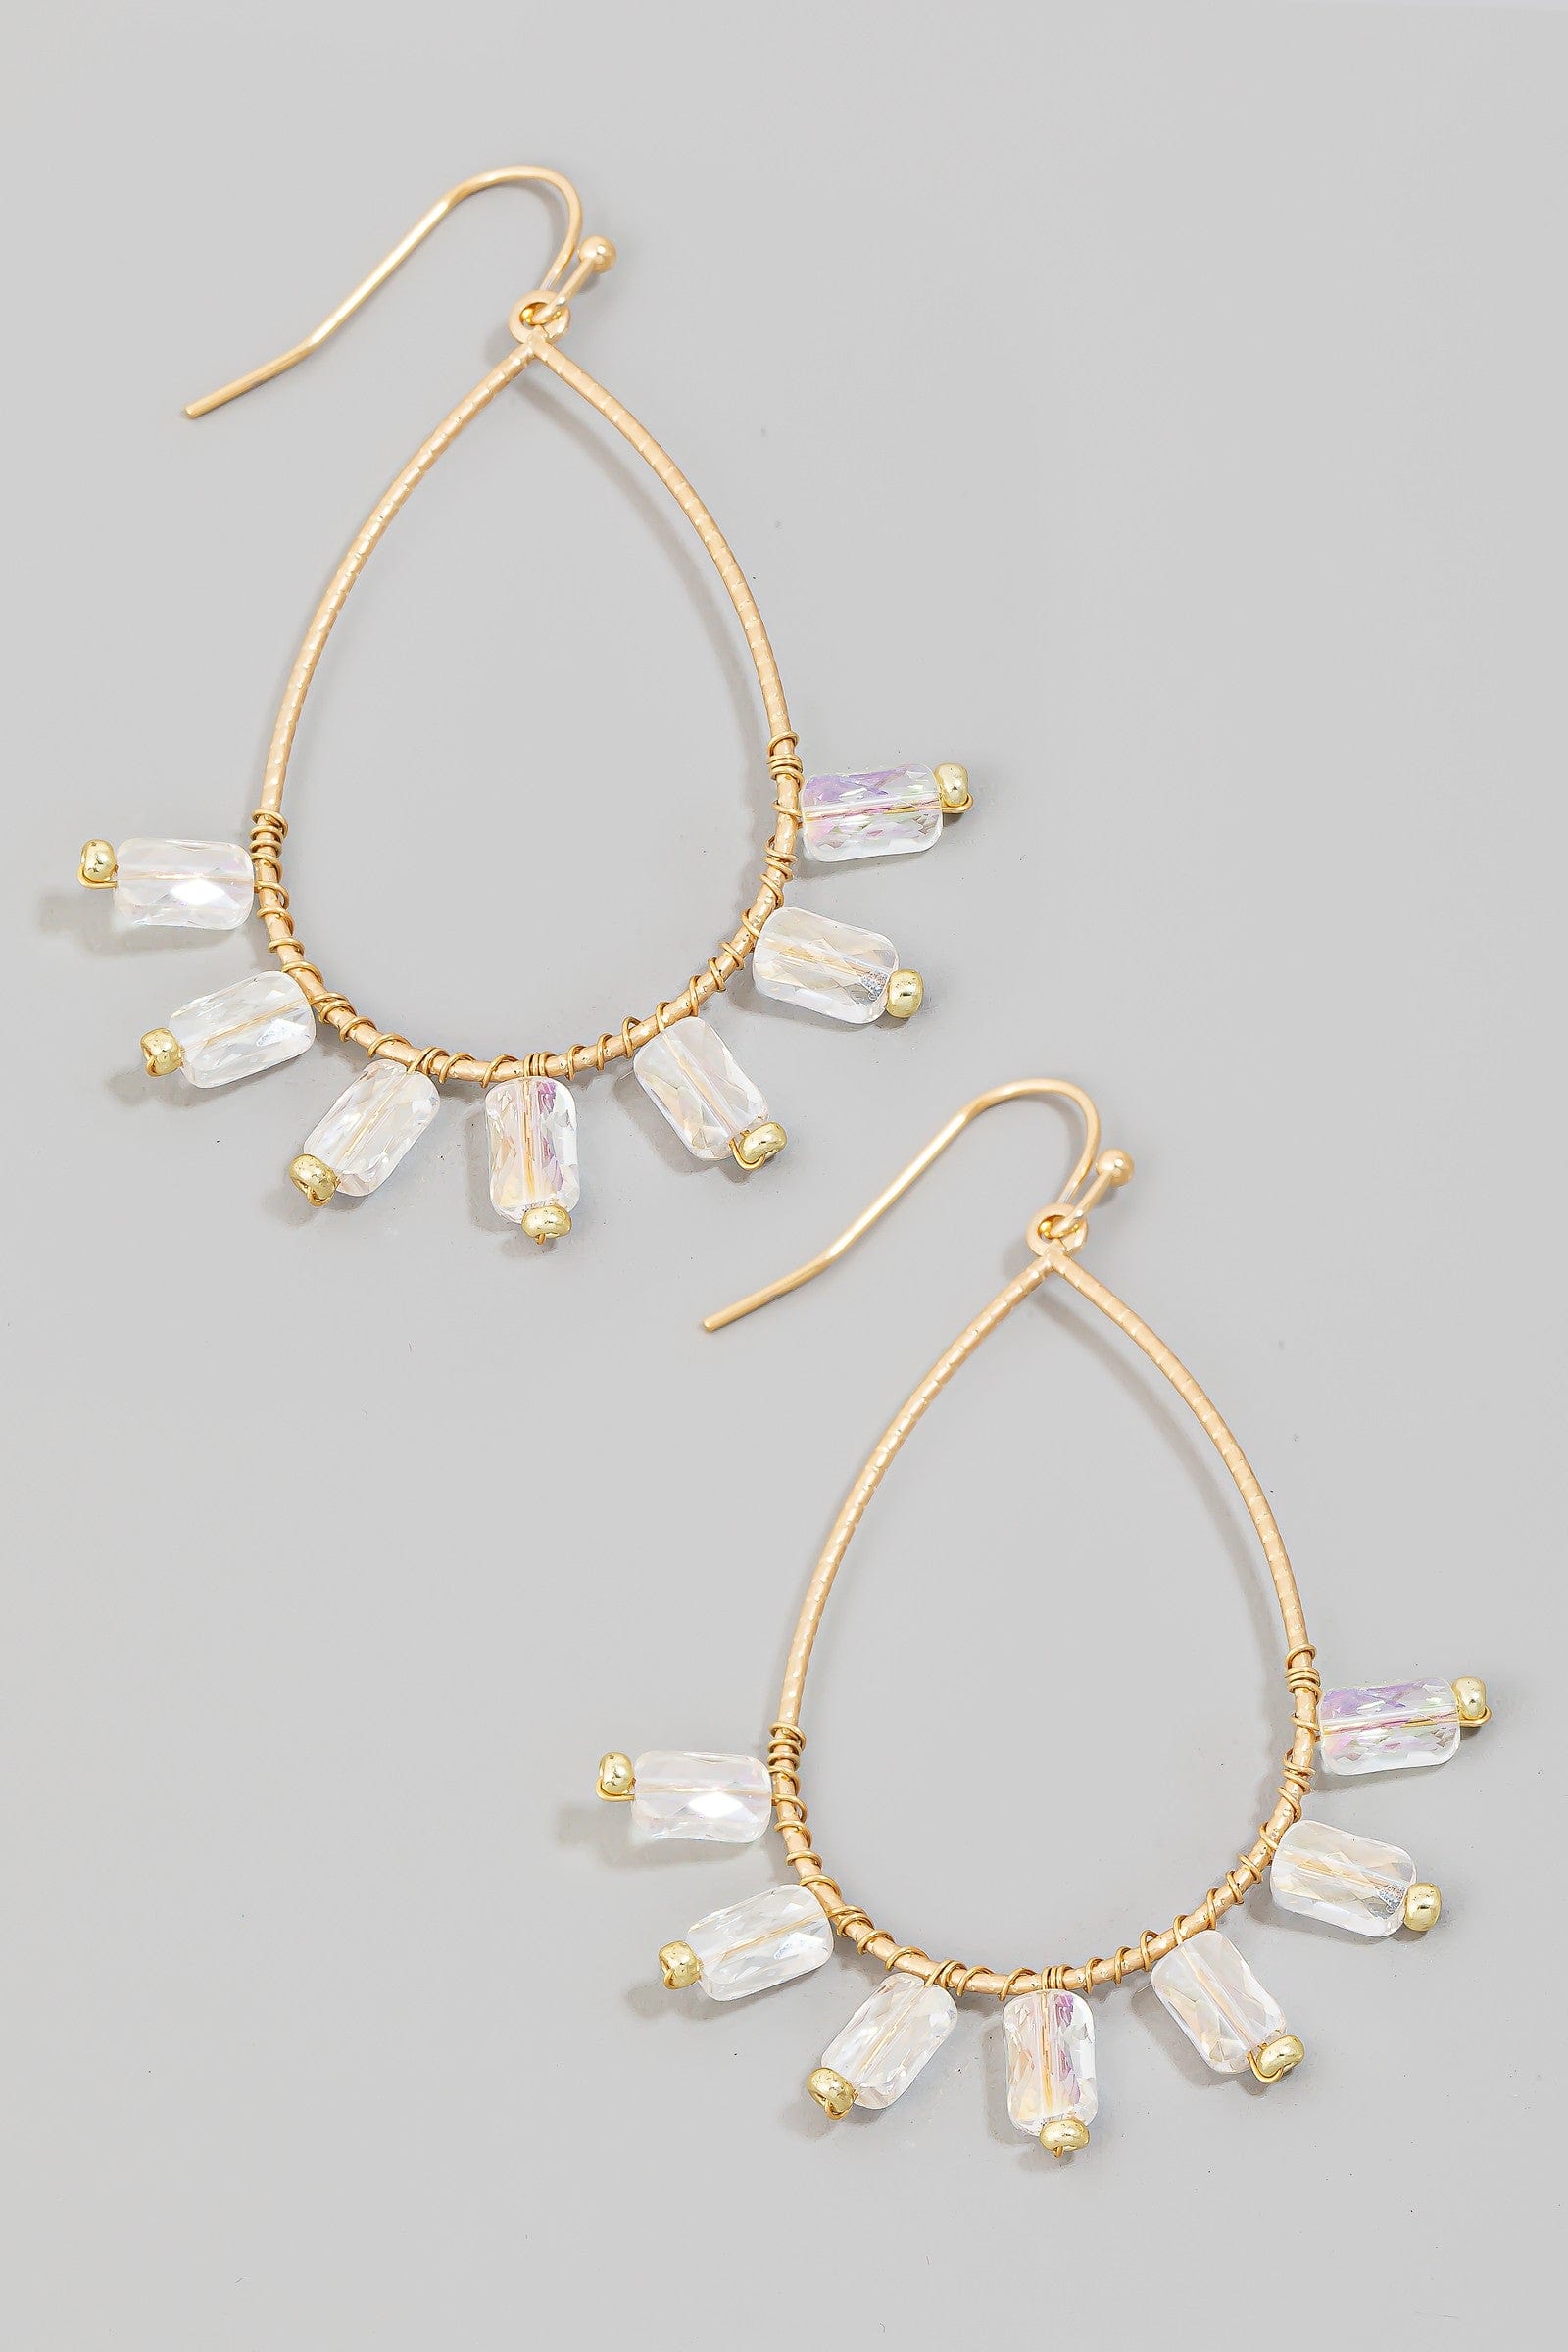 fame accessories Jewelry - Earrings Rhinestone Beaded Tear Dangle Earring In Clear